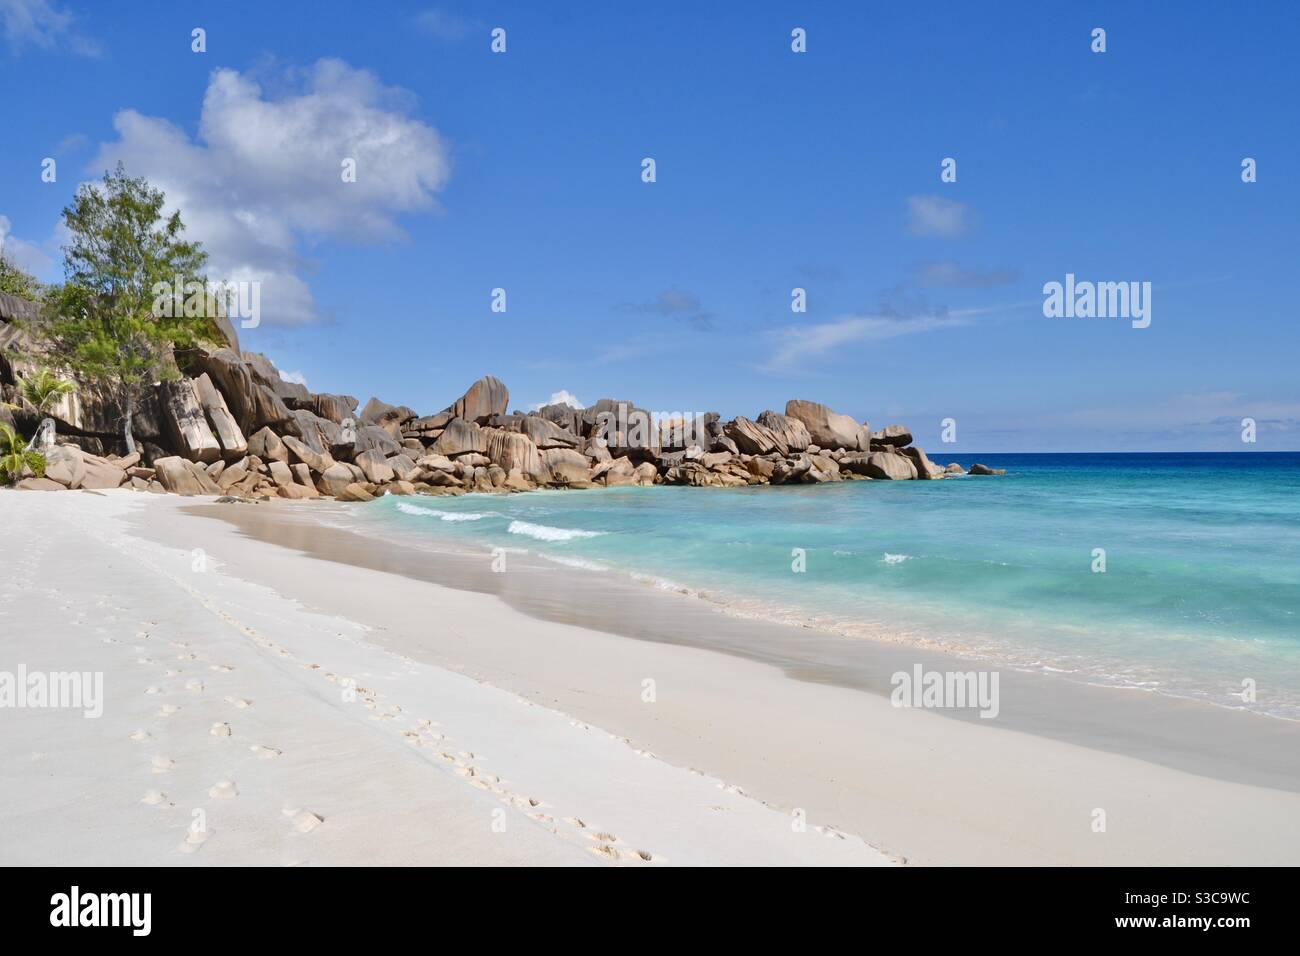 Magischer und idyllischer tropischer Strand im exotischen Paradies von la digue mit Bäumen, Sand, türkisfarbenem Meer und Felsbrocken auf den luxuriösen Seychellen bei strahlendem Sommersonnenschein. Stockfoto